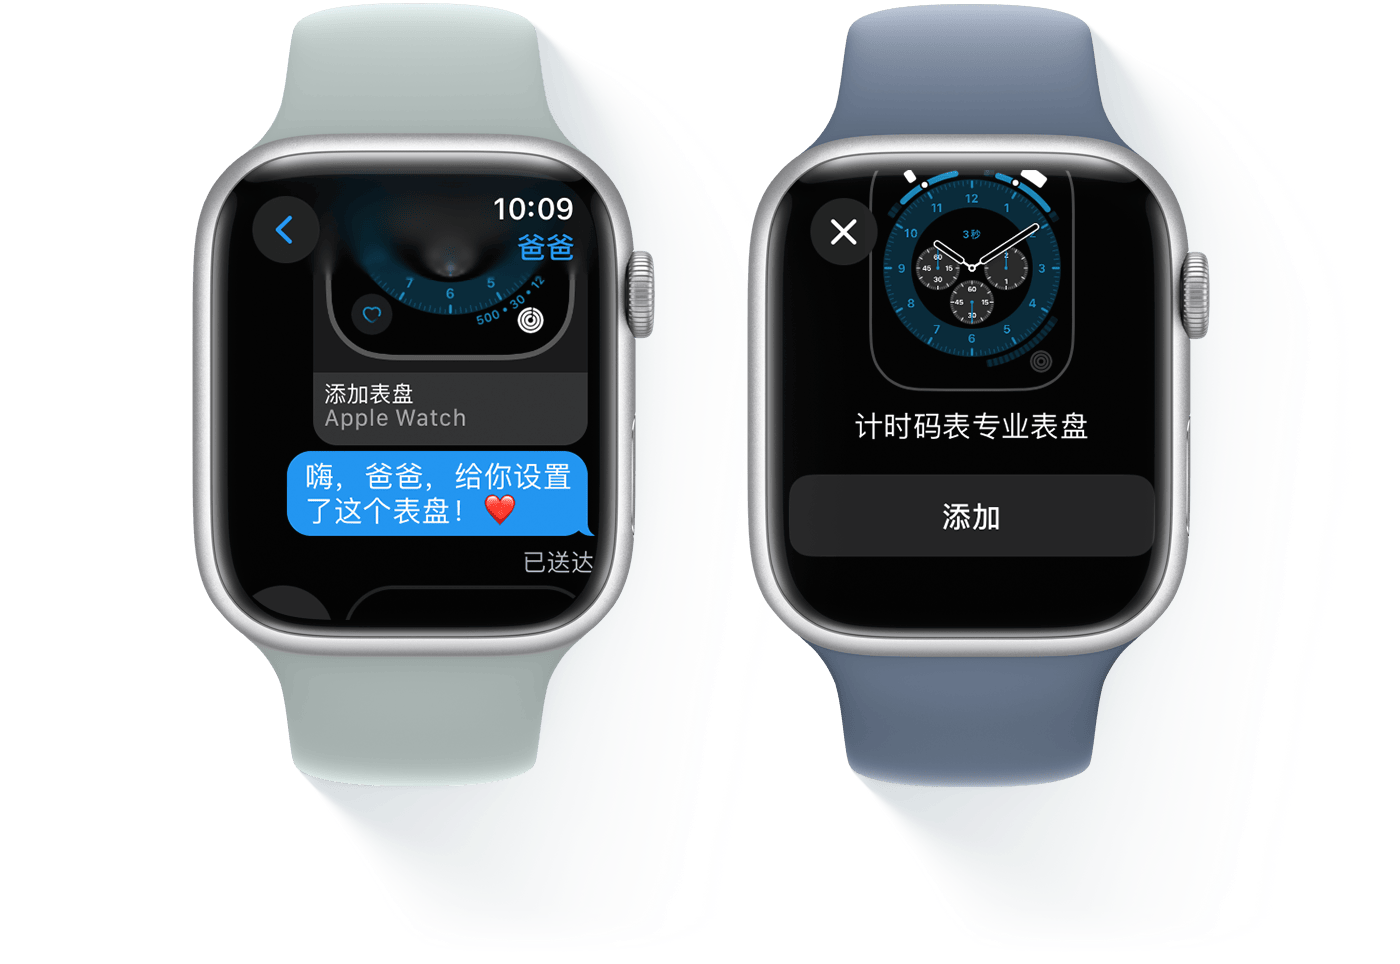 两台 Apple Watch，其中一台显示短信对话，另一台显示计时码表专业表盘